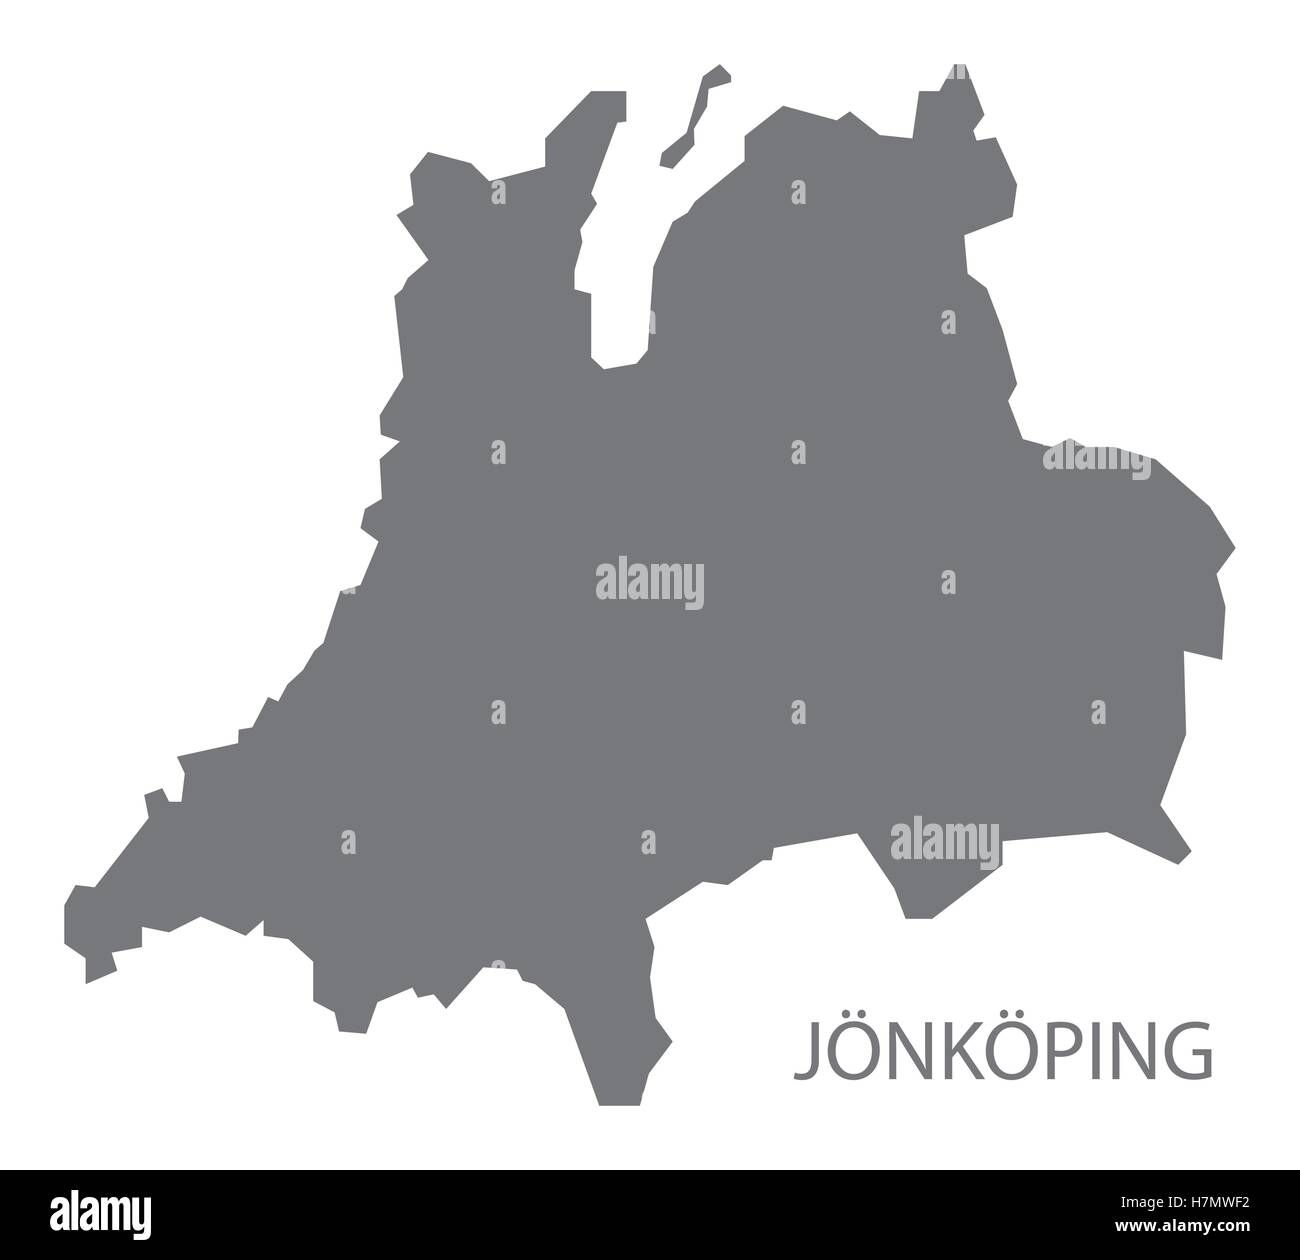 Jonkoping Sweden Map grey Stock Vector